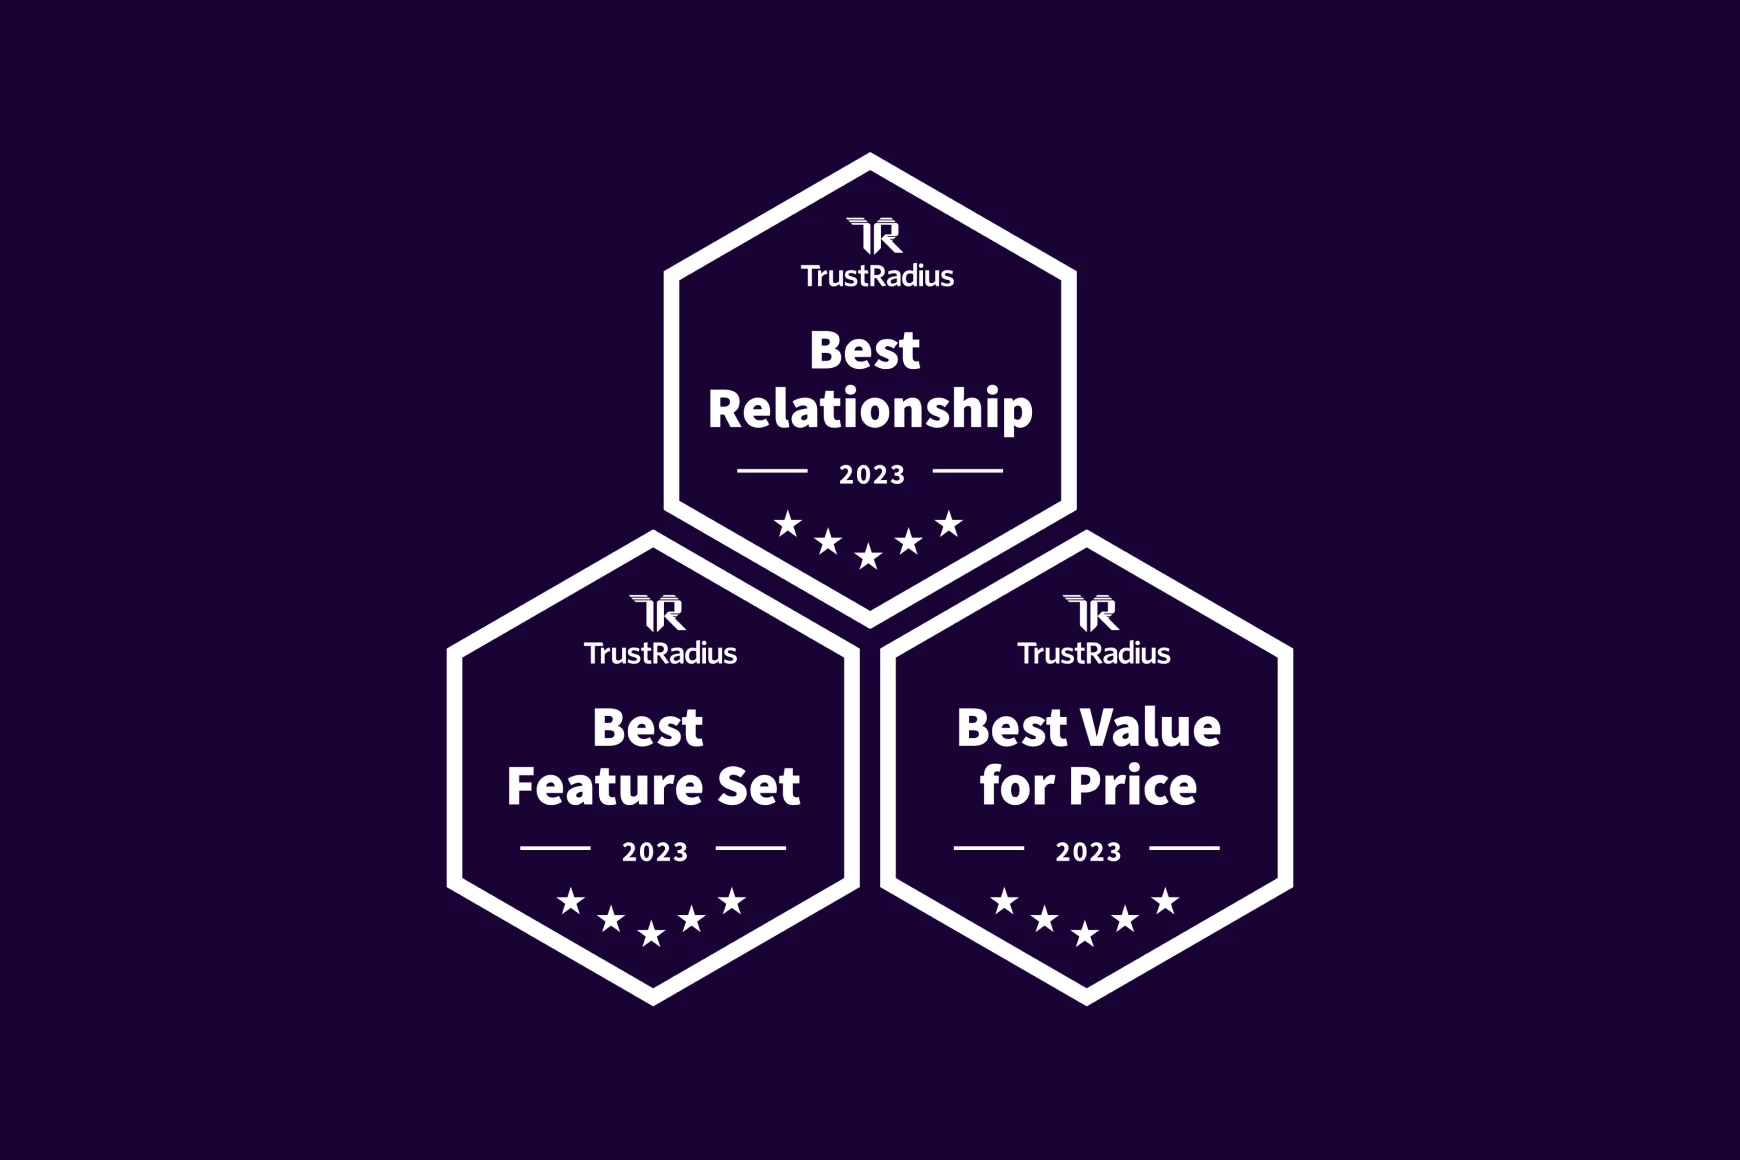 Talkdesk erhält TrustRadius 2023 Best of Awards für Beziehung, Wert und Funktionsumfang